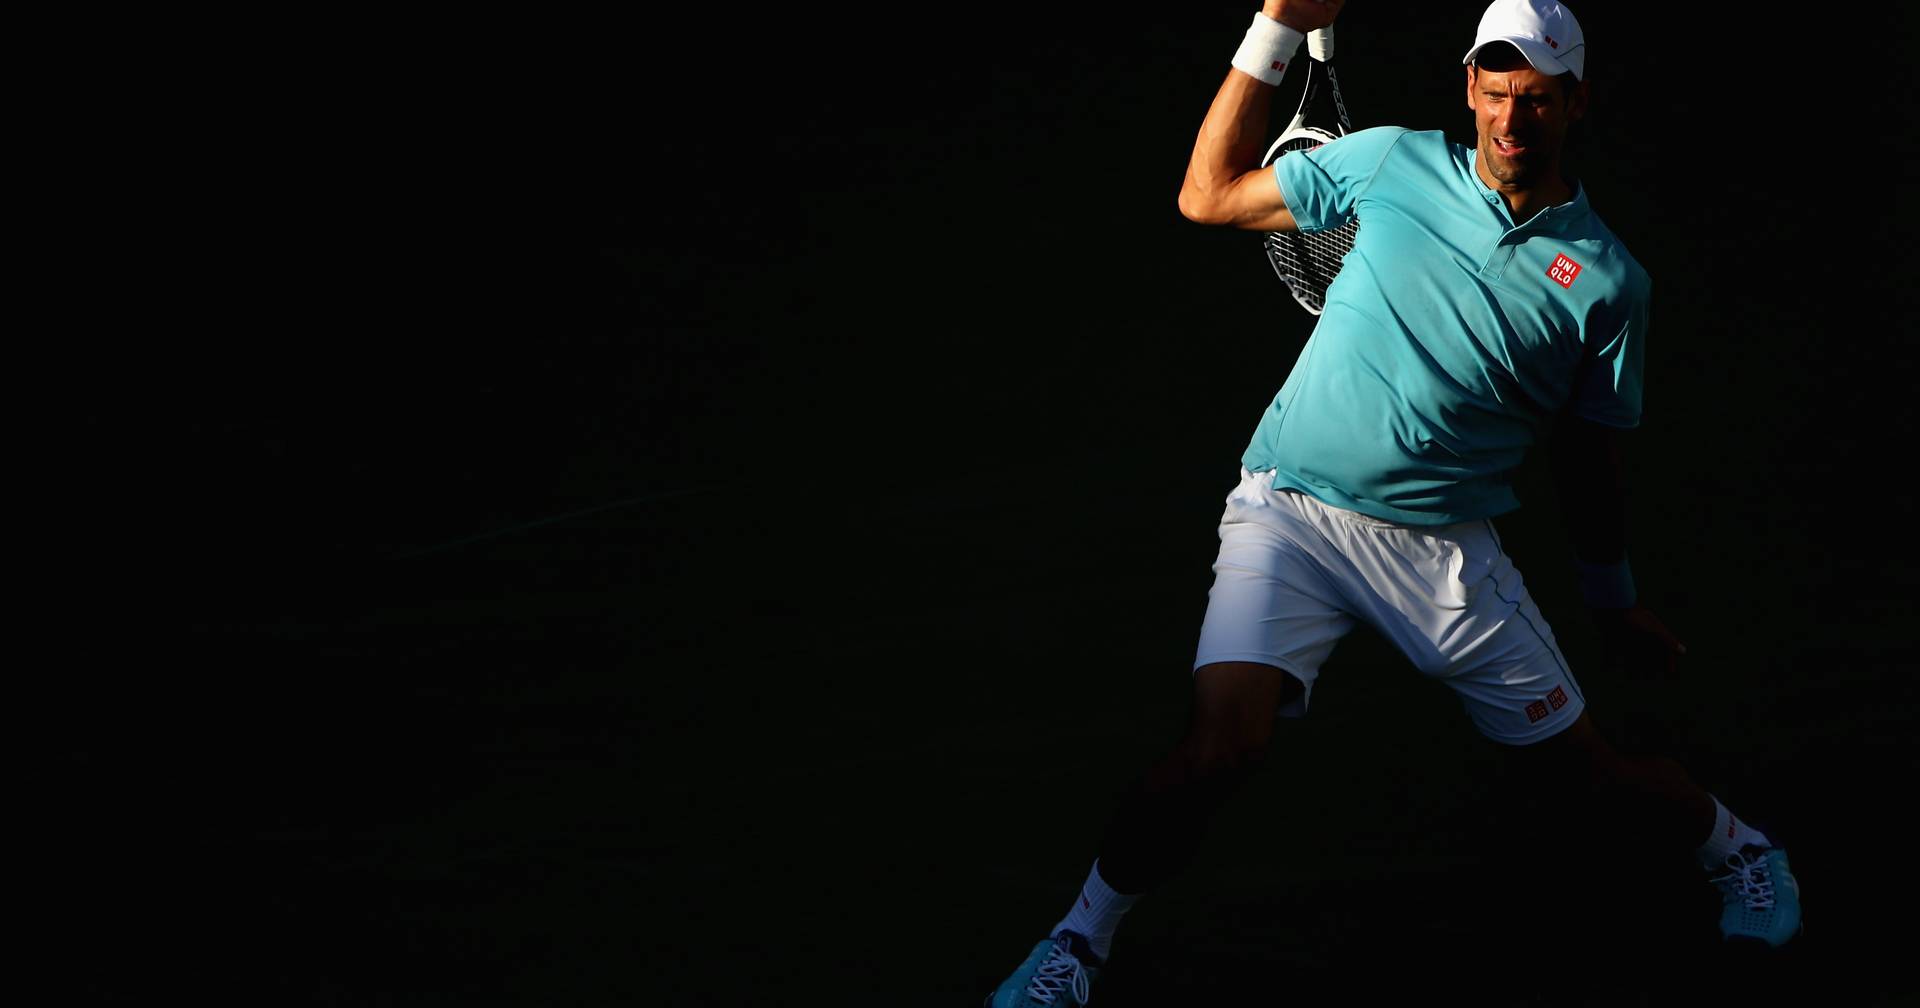 Sem vacina, Djokovic está fora de torneios de ténis nos EUA